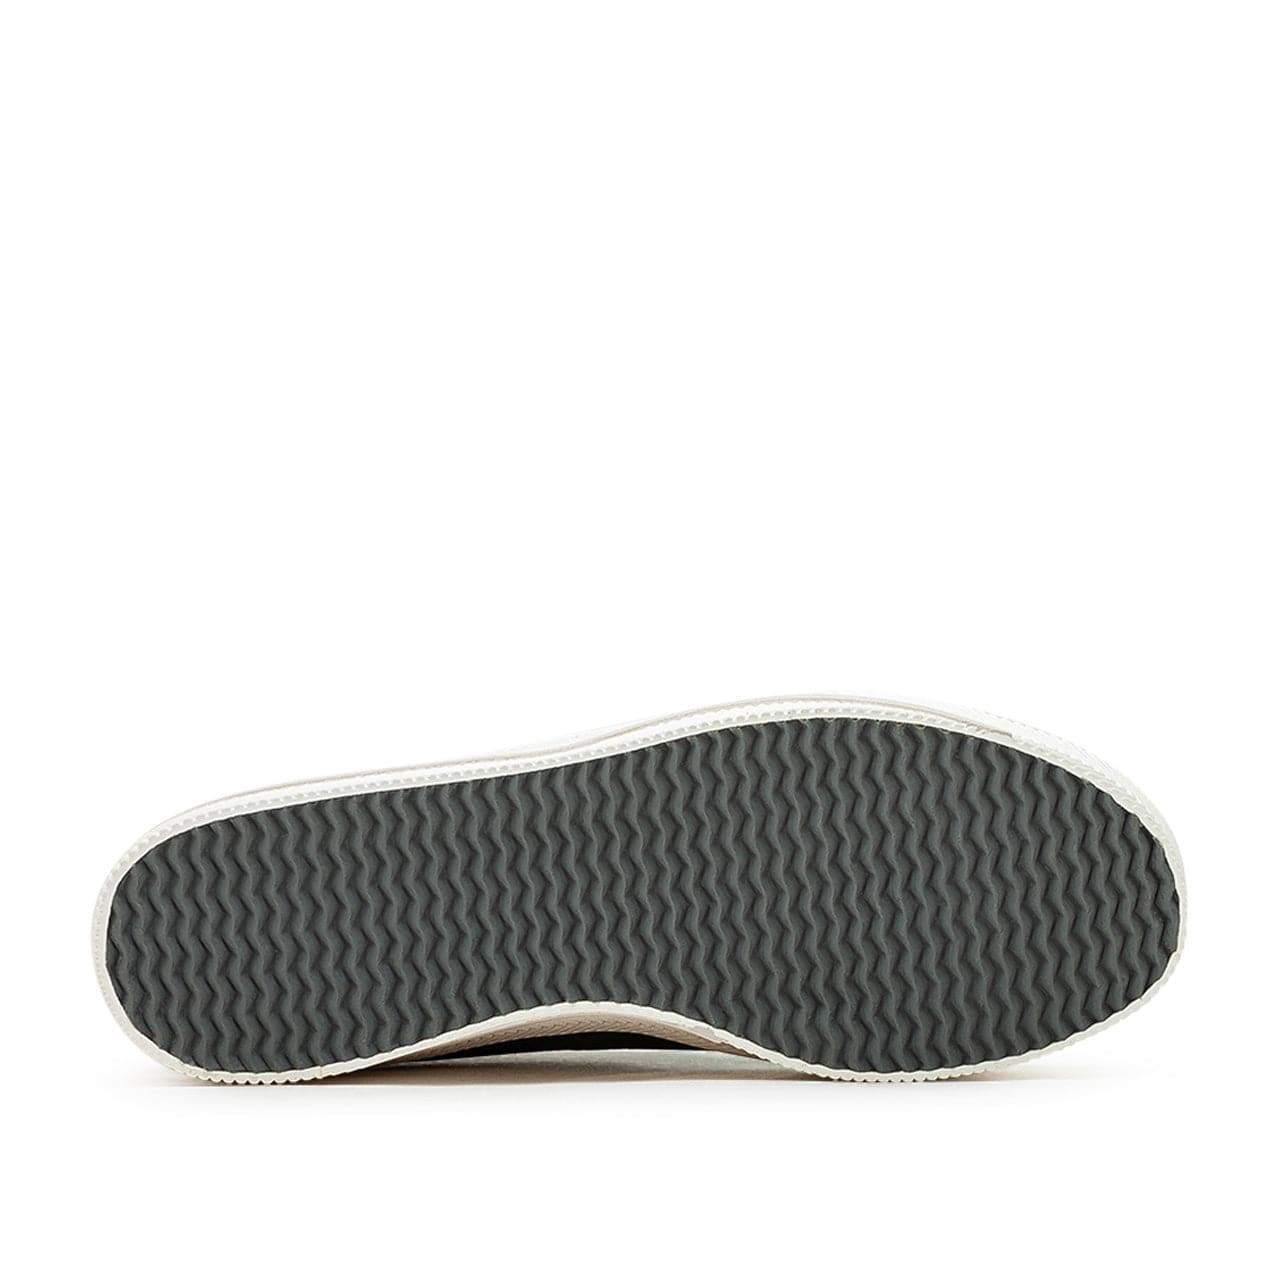 adidas Nizza 2 Leather (Grau / Weiß)  - Allike Store